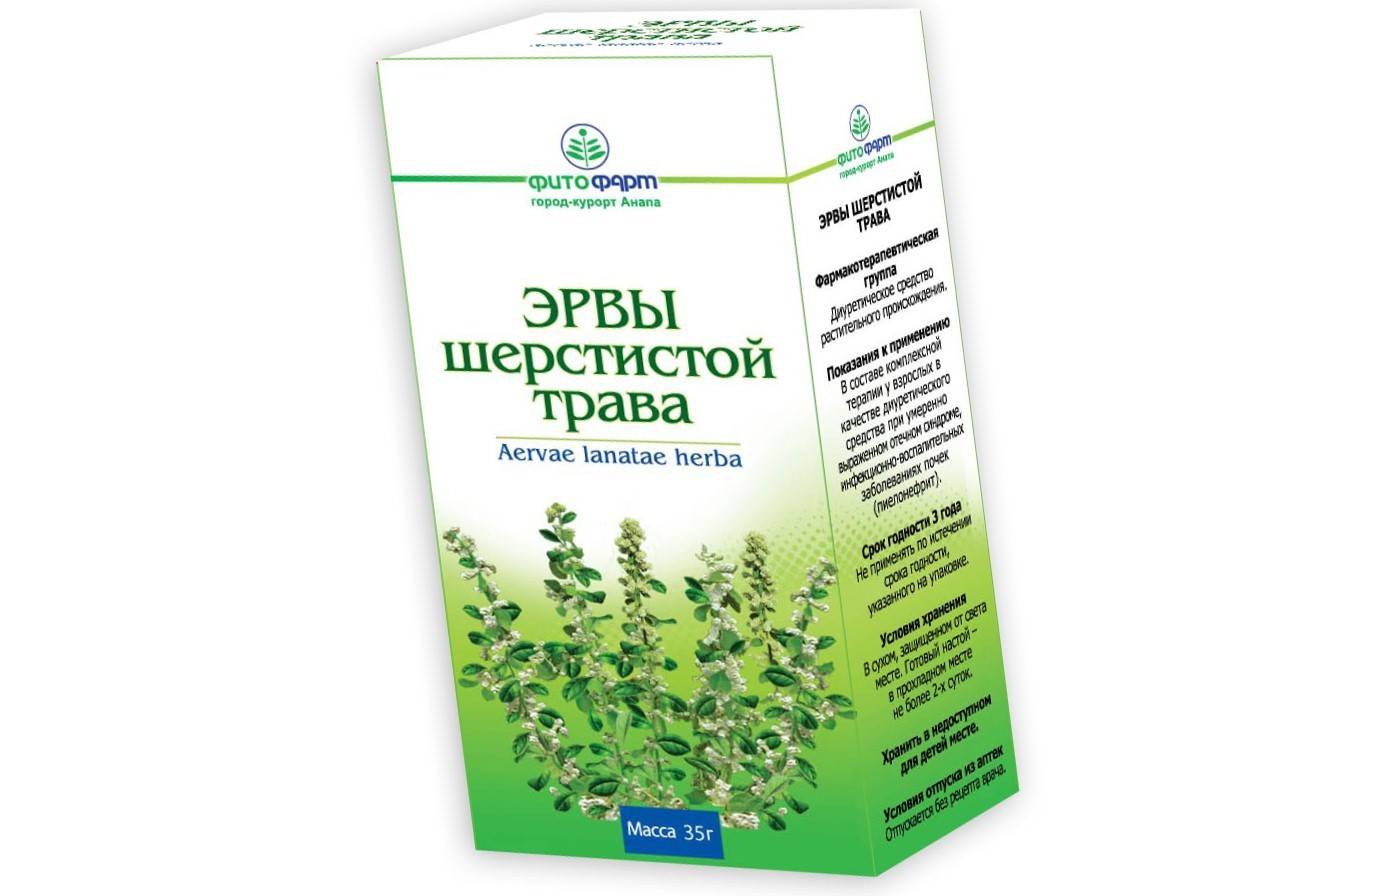 Трава пол-пала (эрва шерстистая) — лечебные свойства и применение